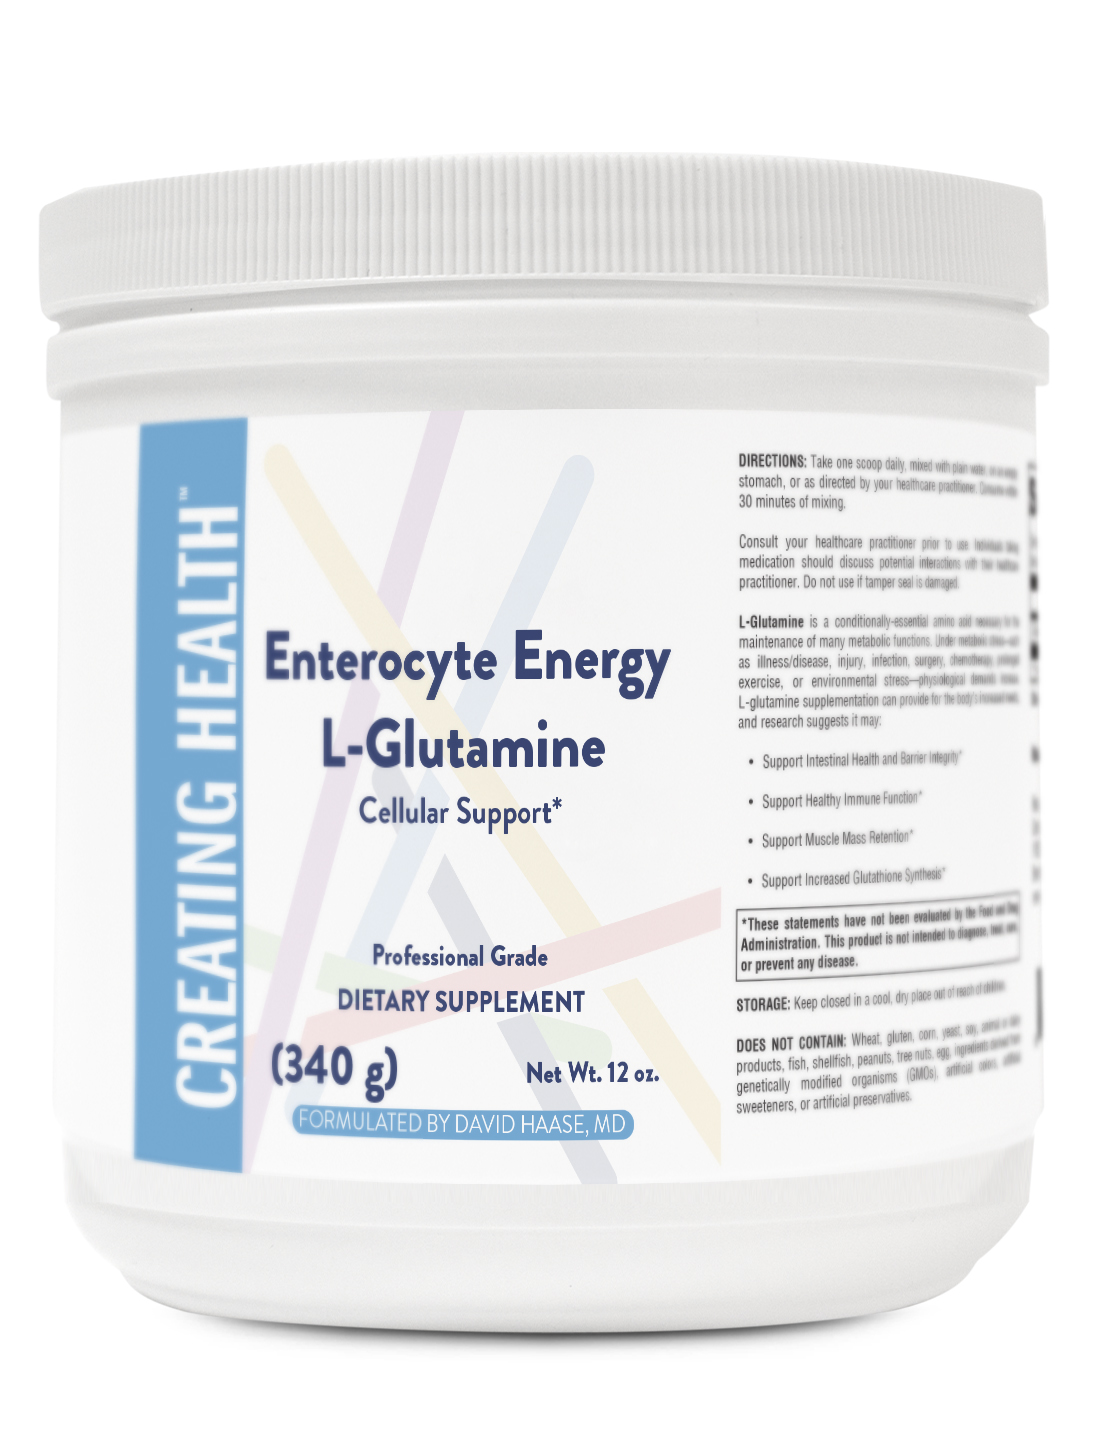 Glutamine for energy